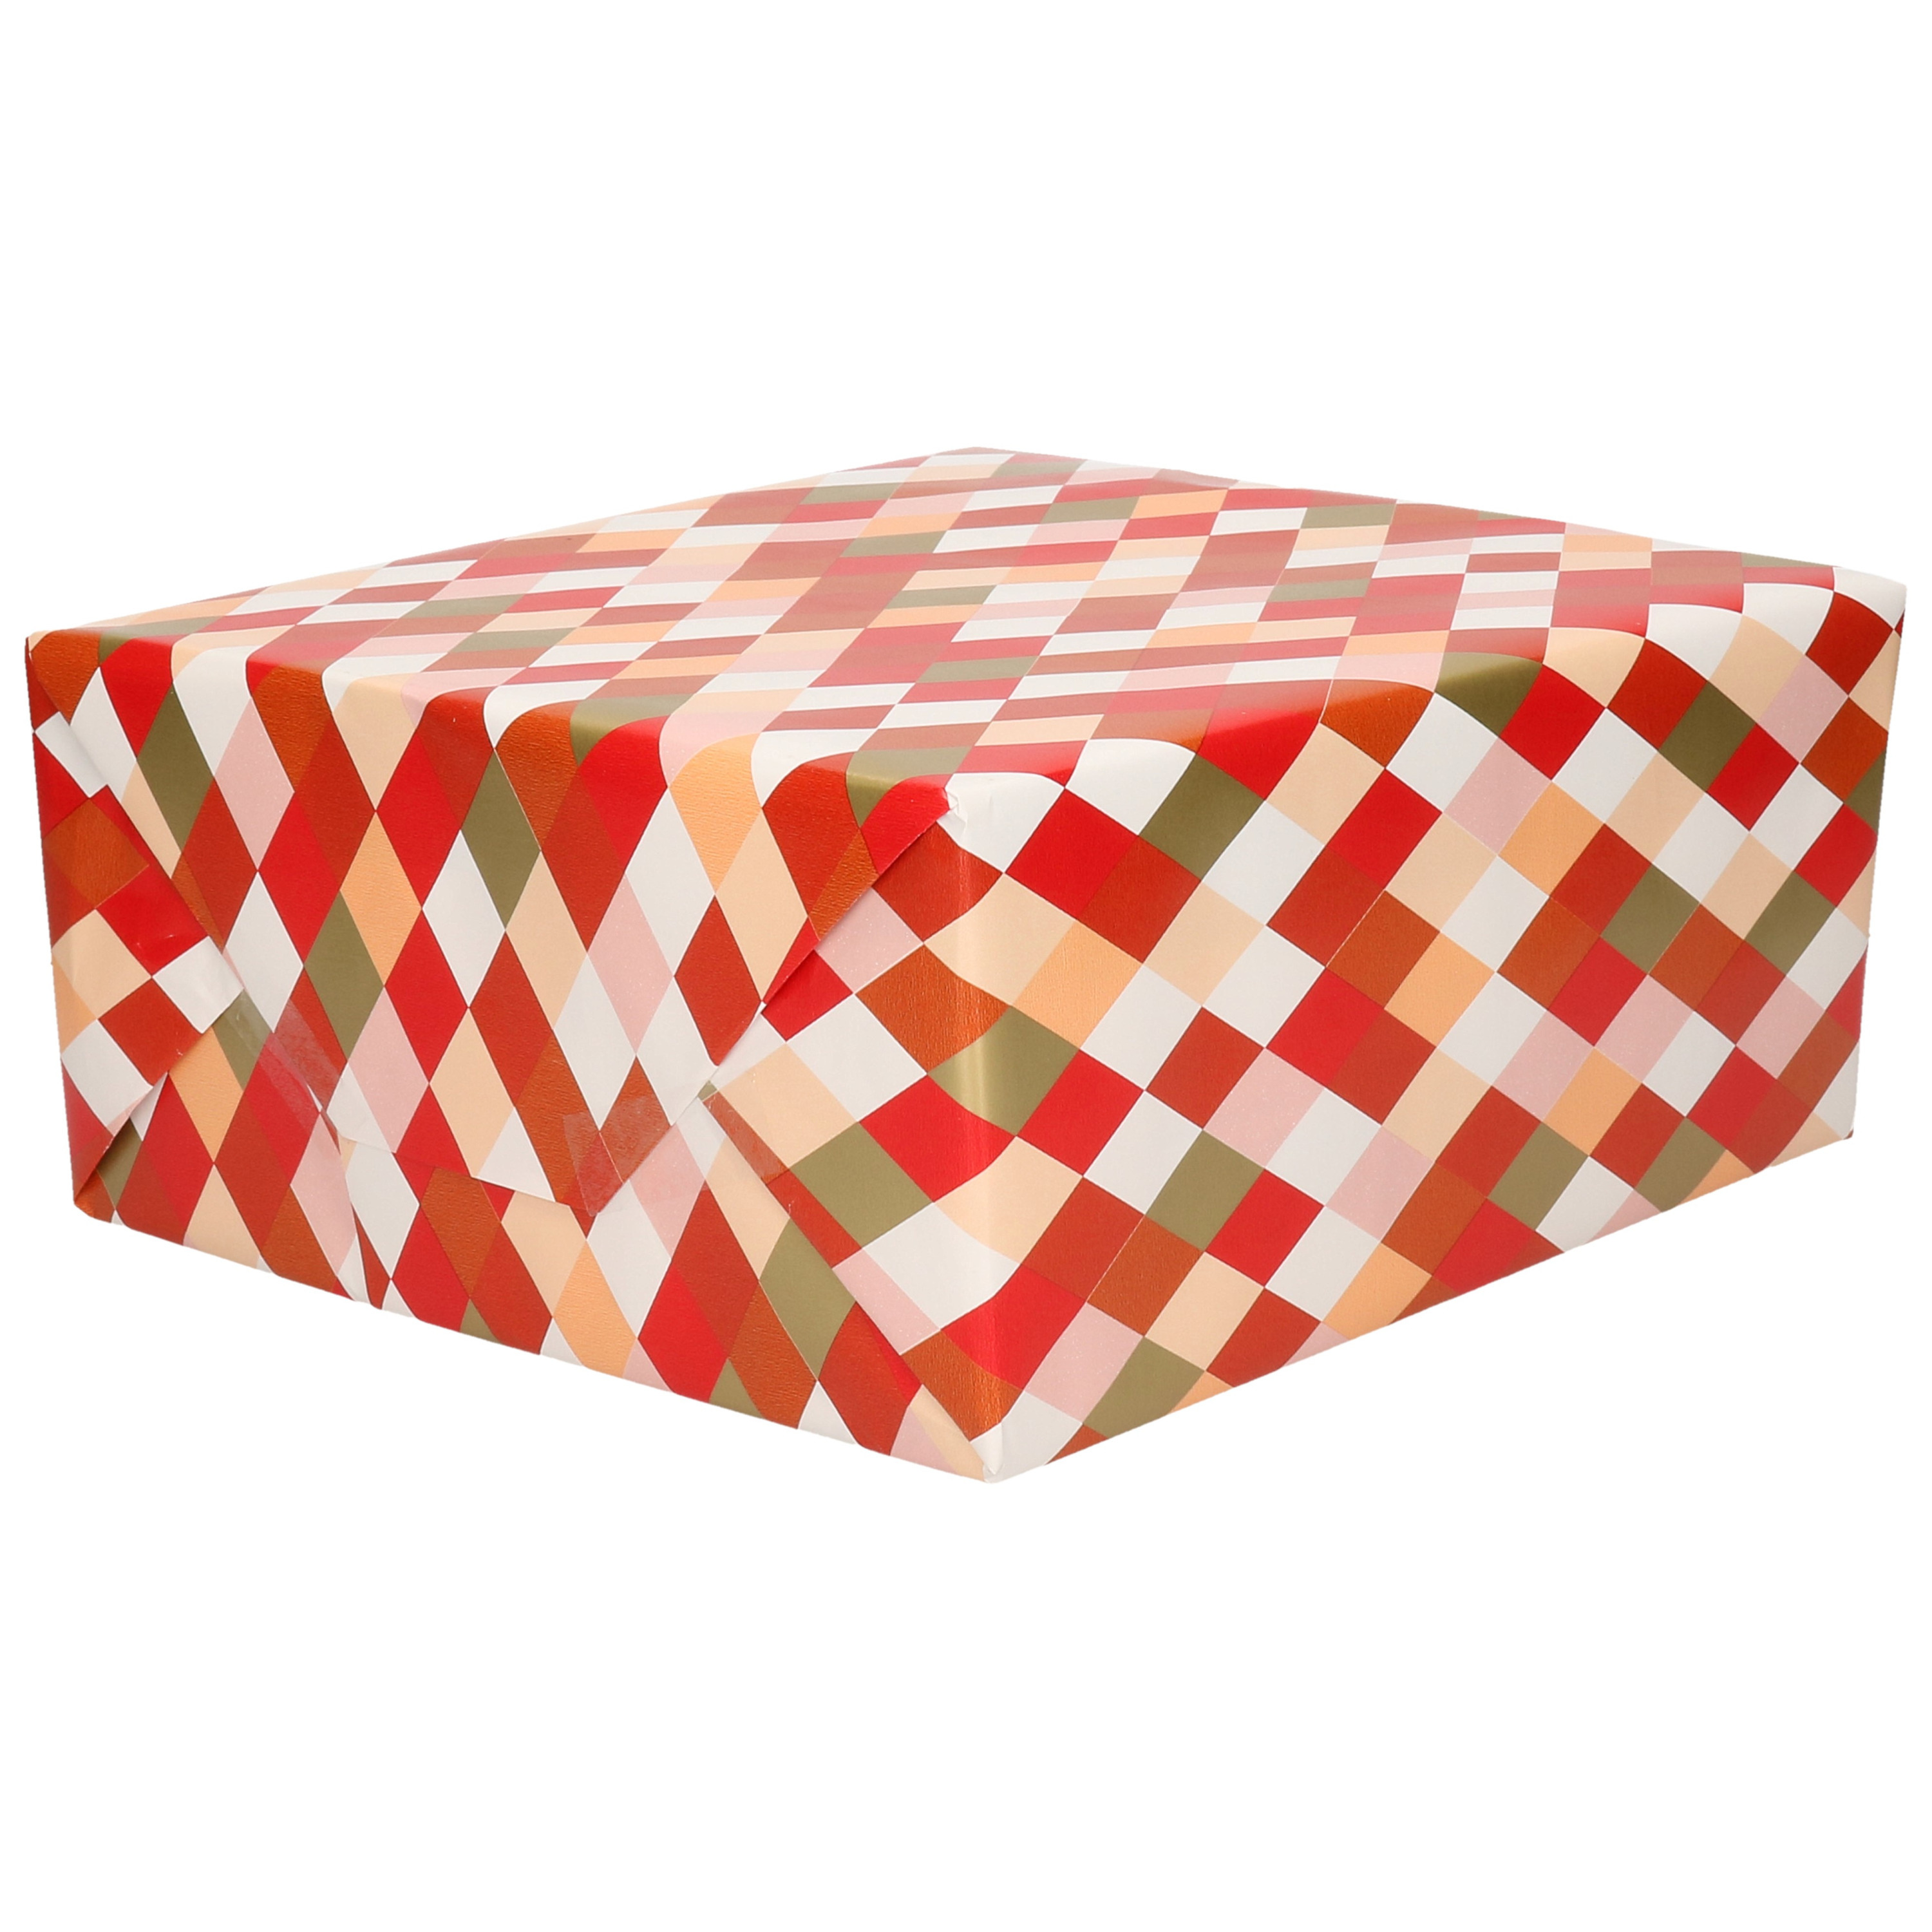 1x Cadeaupapier roze/rood/goud/oranje/wit ruiten motief 70 x 200 cm